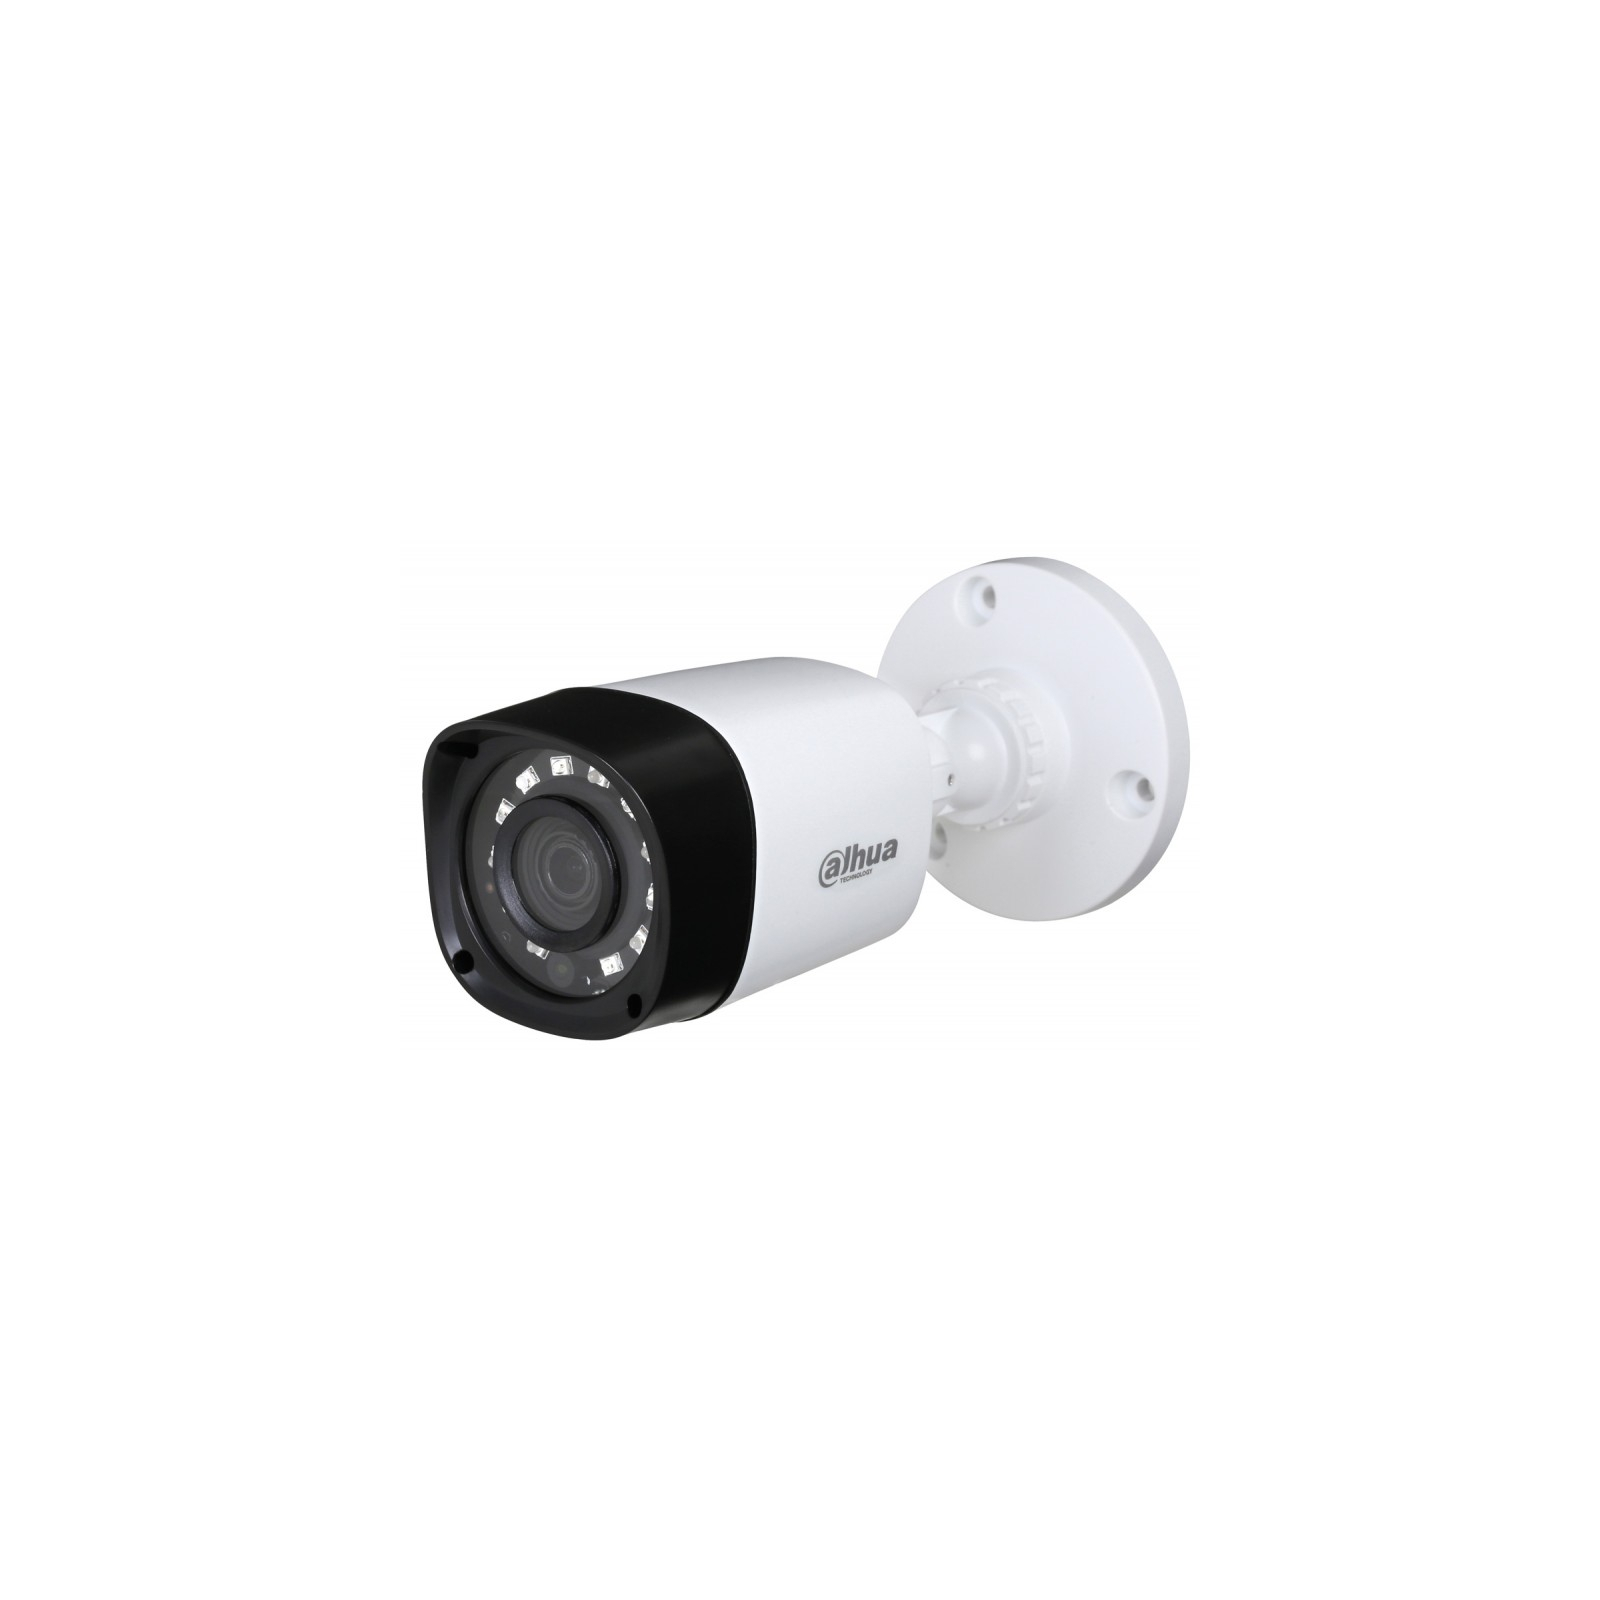 Камера видеонаблюдения Dahua DH-HAC-HFW1200RP (3.6)